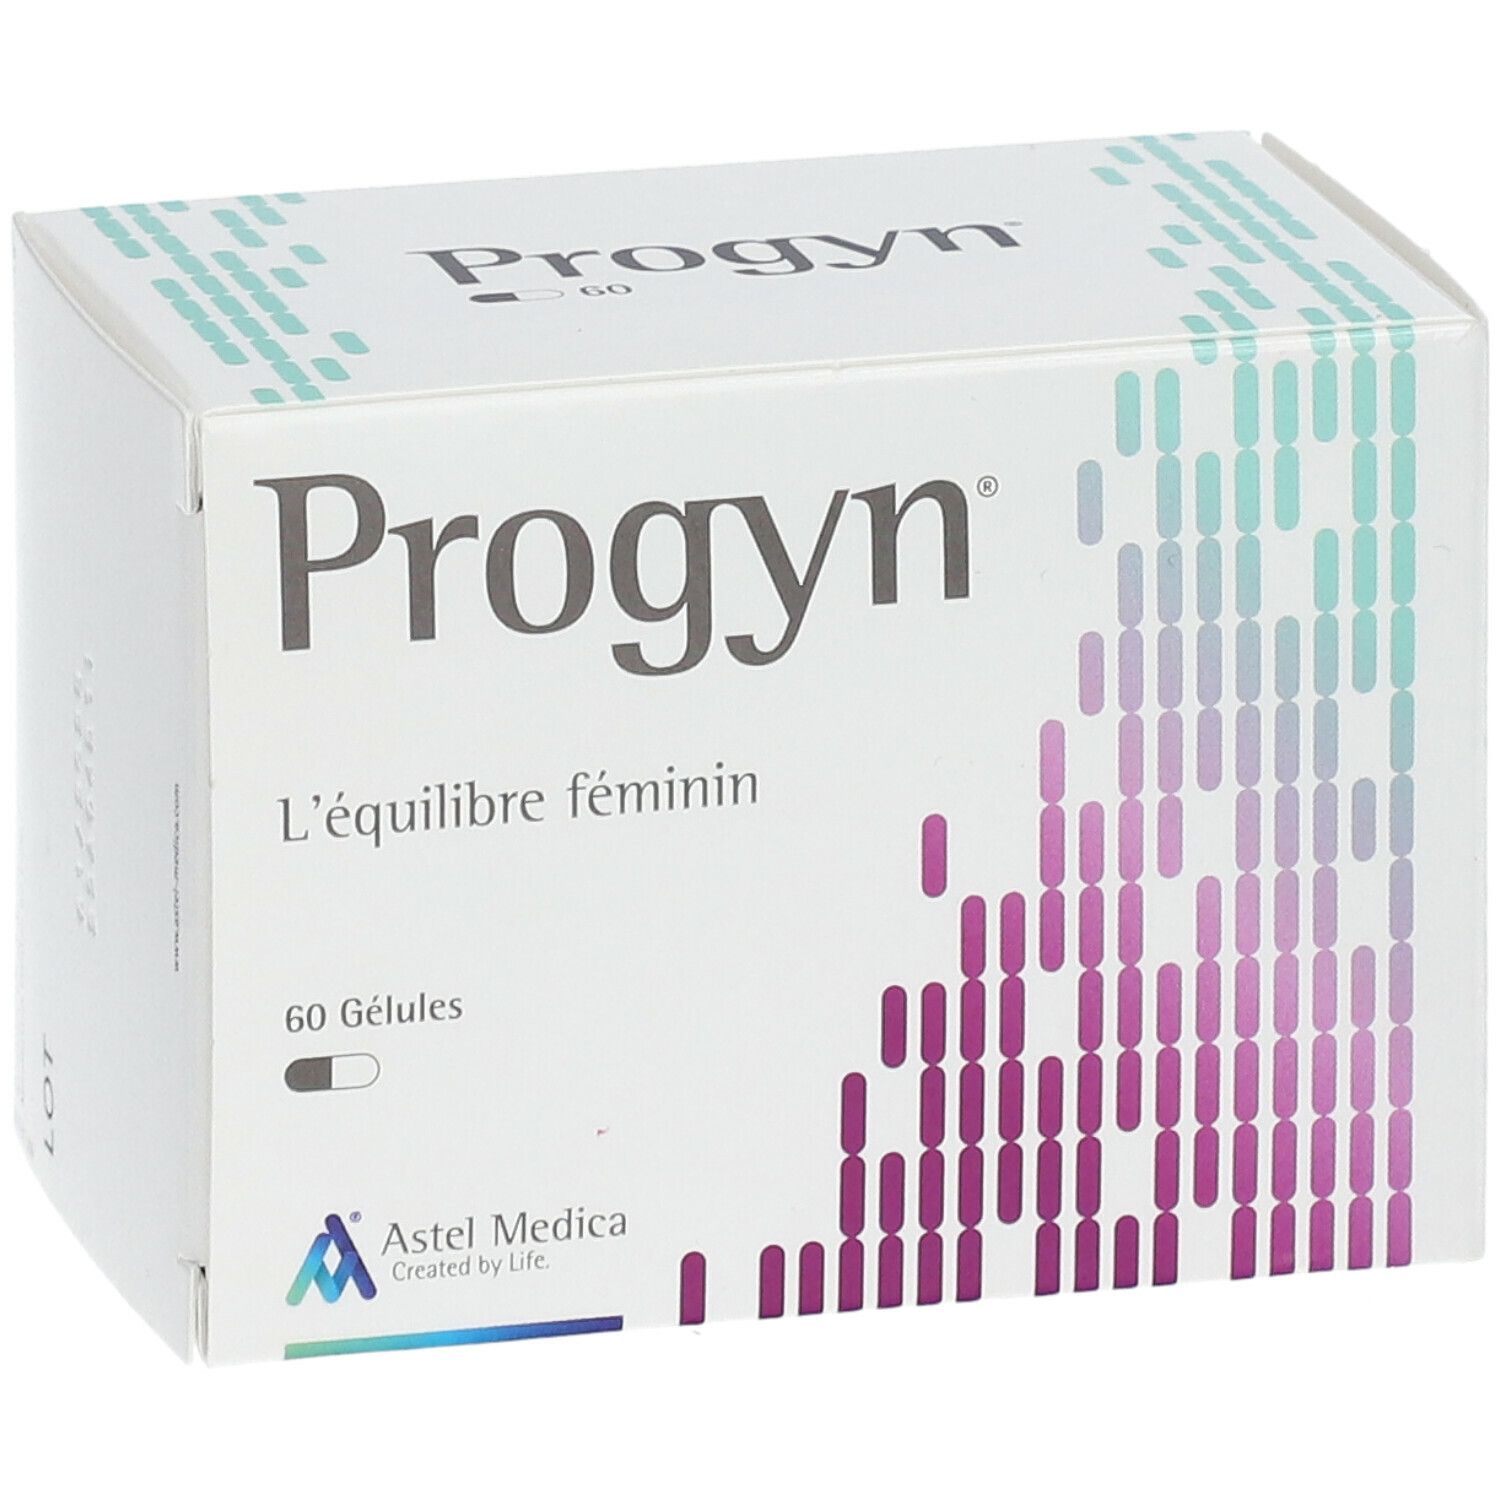 Progyn®